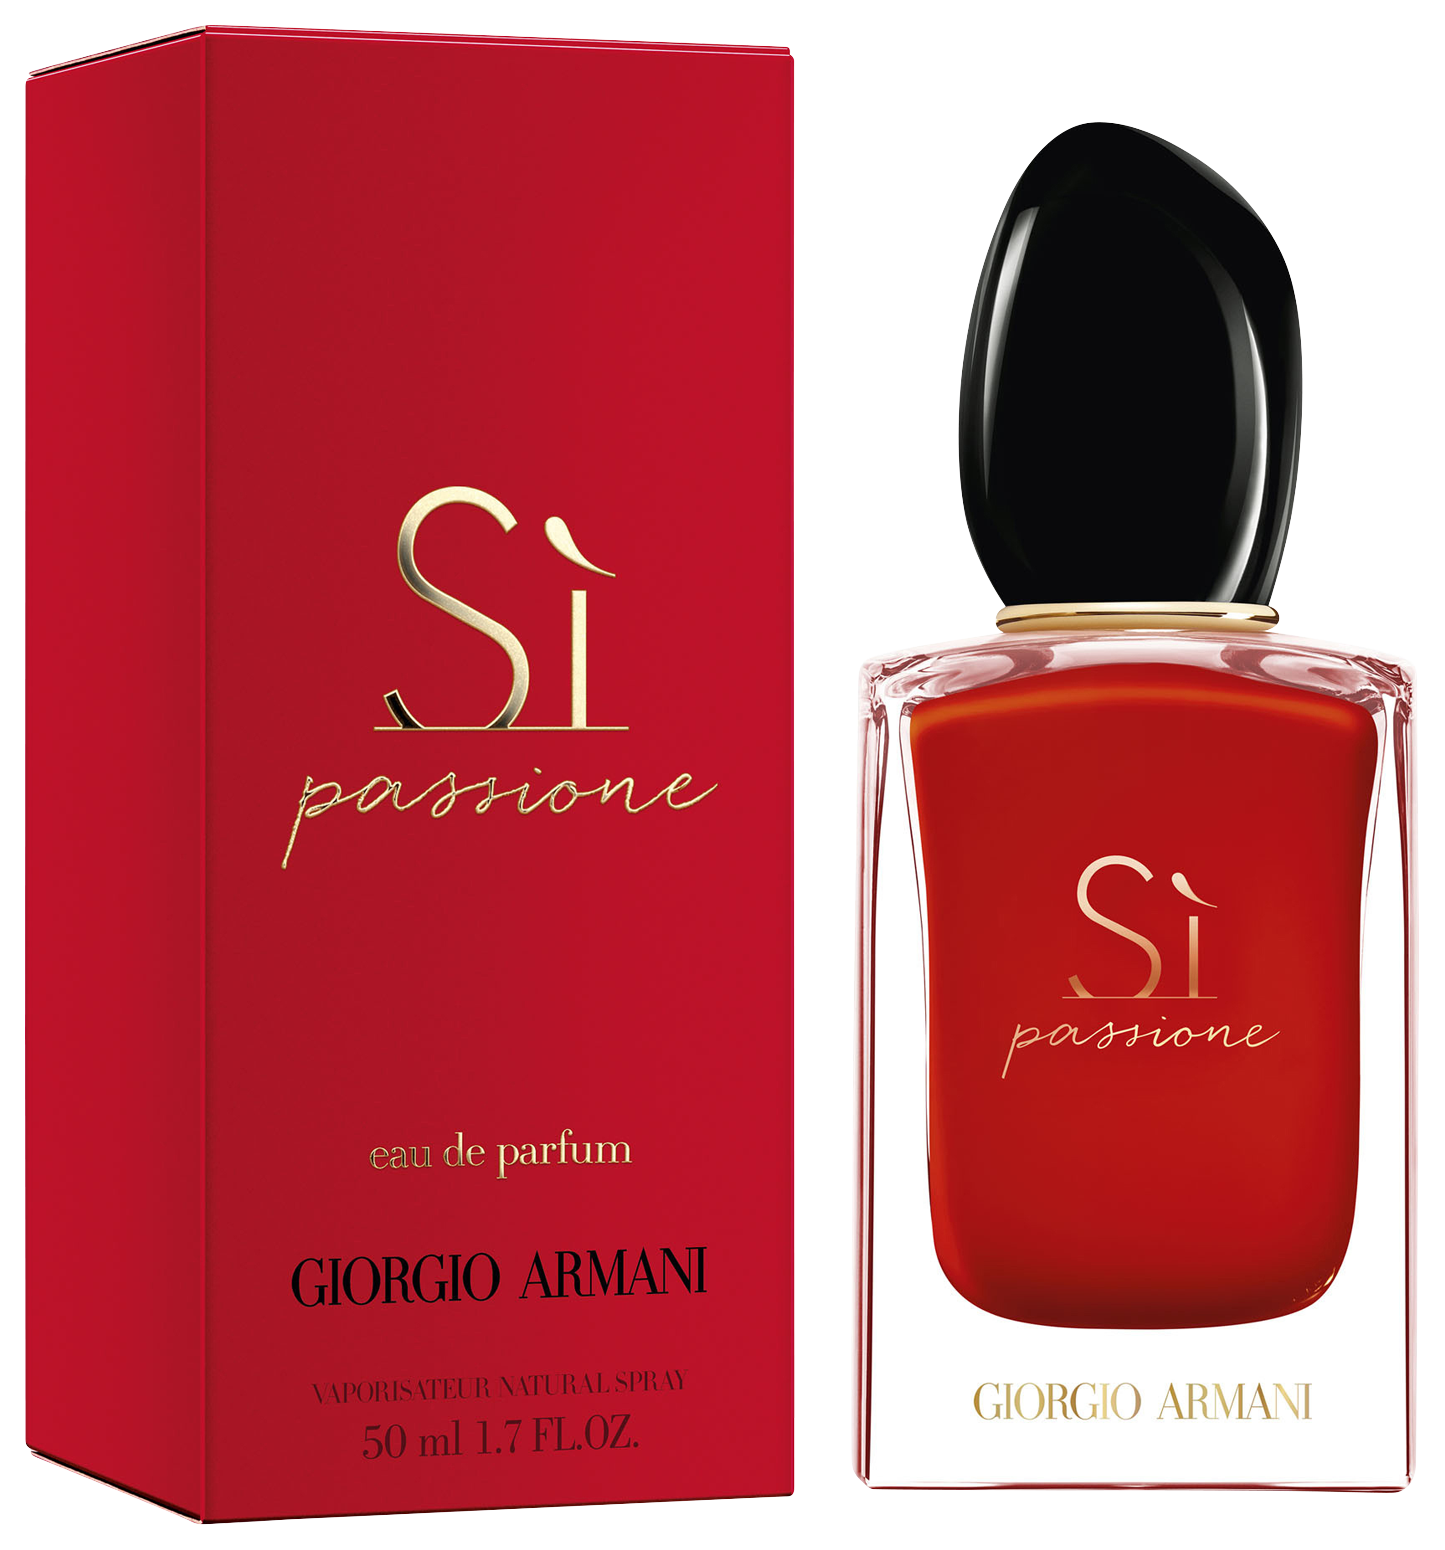 Giorgio Armani Si Passione Eau de Parfum 50 ml